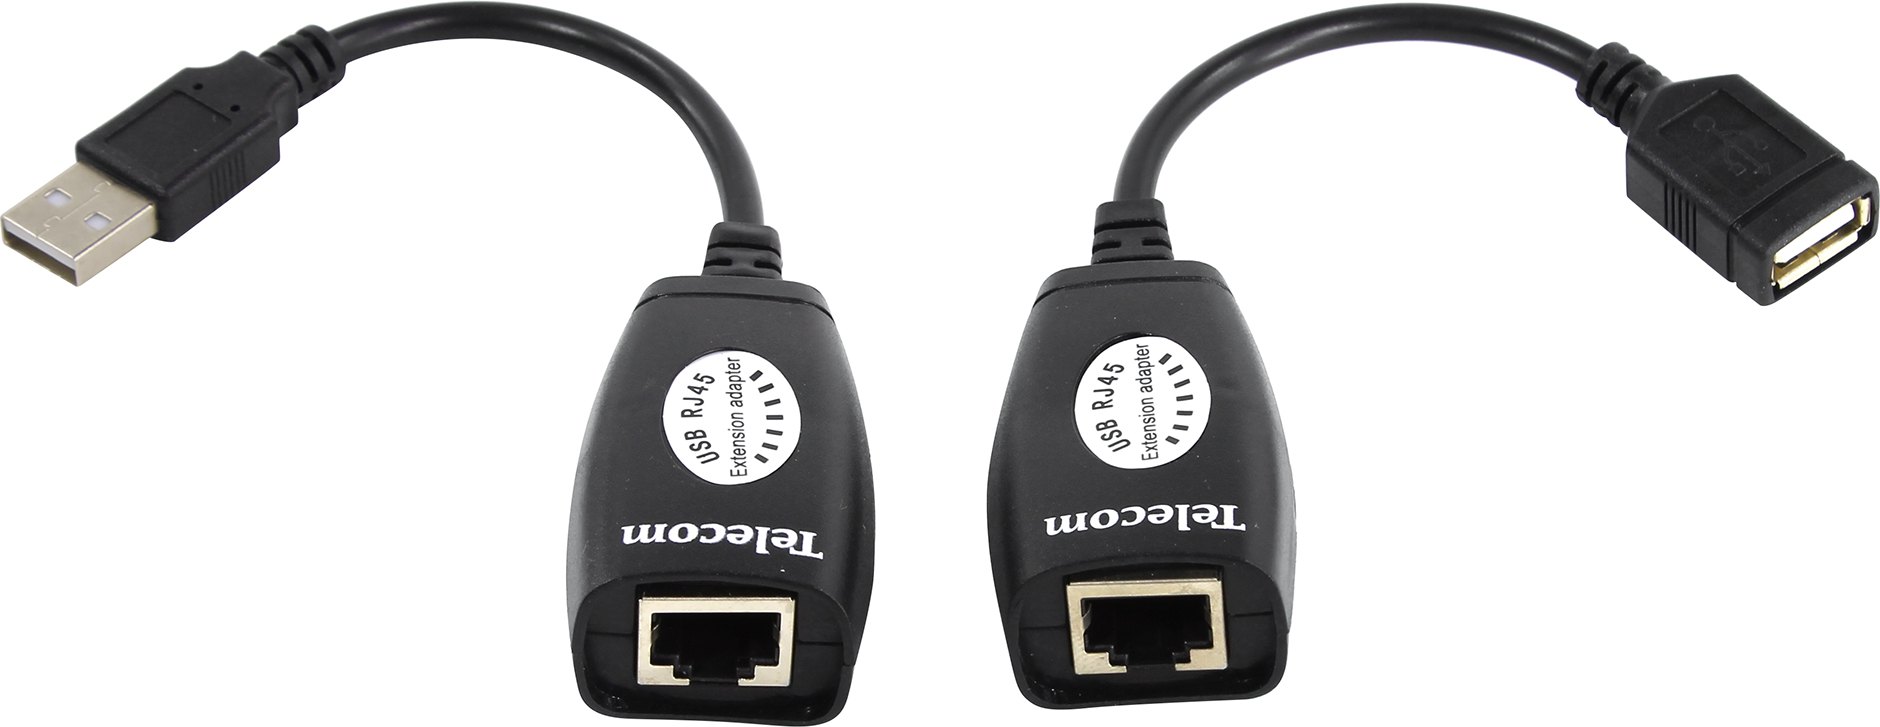 Переходник-удлинитель (адаптер) USB-AMAF-RJ-45, 10 см, черный Telecom, до 45 м (TU824)